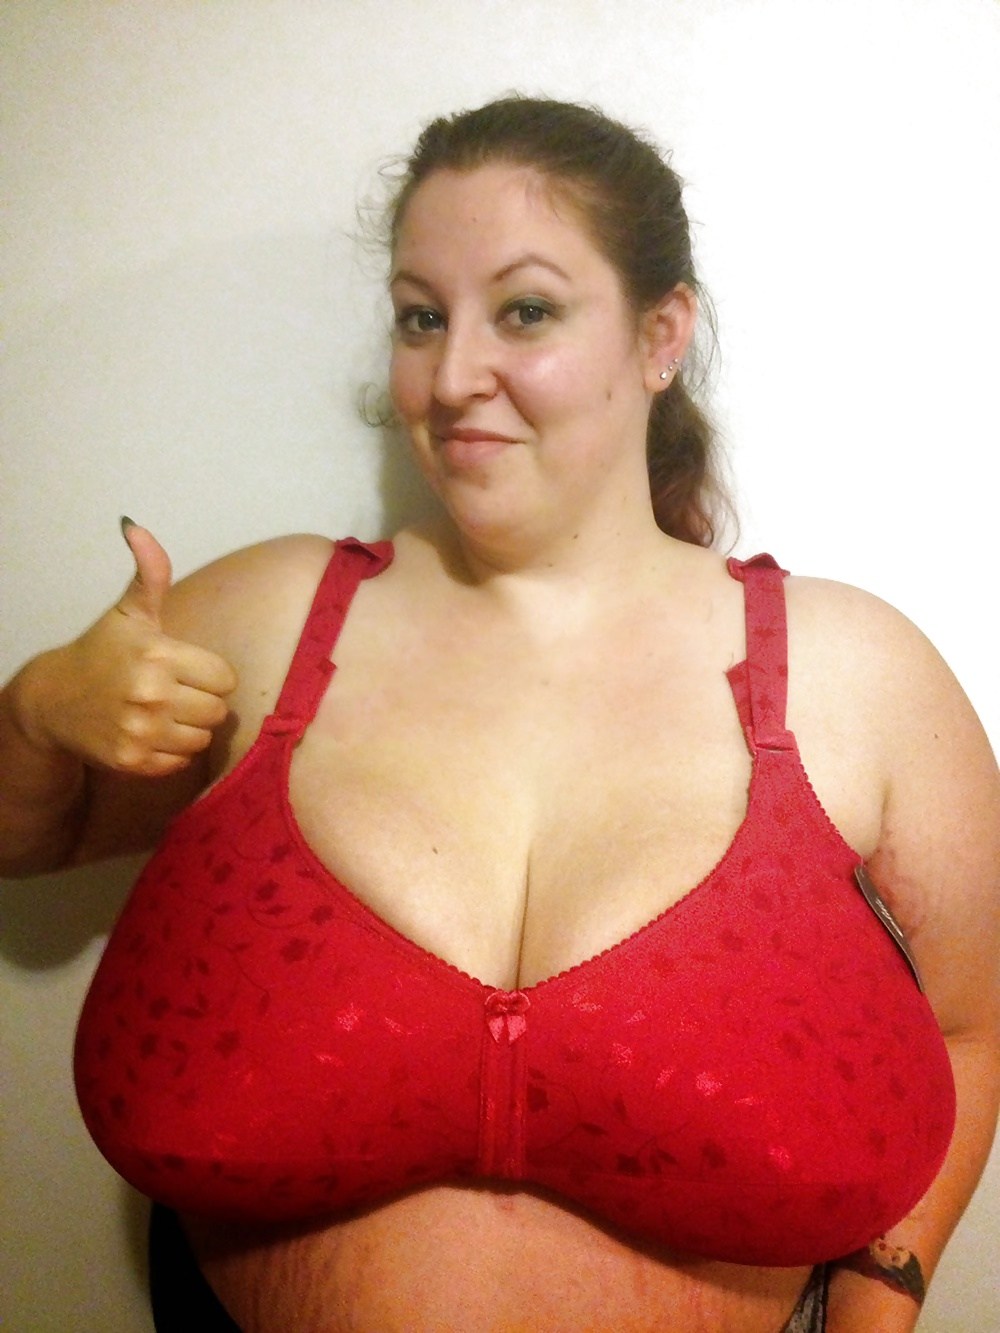 Porn Big Tits Big Bras - Huge Fat Boobs in a Bra (68 photos) - sex eporner pics